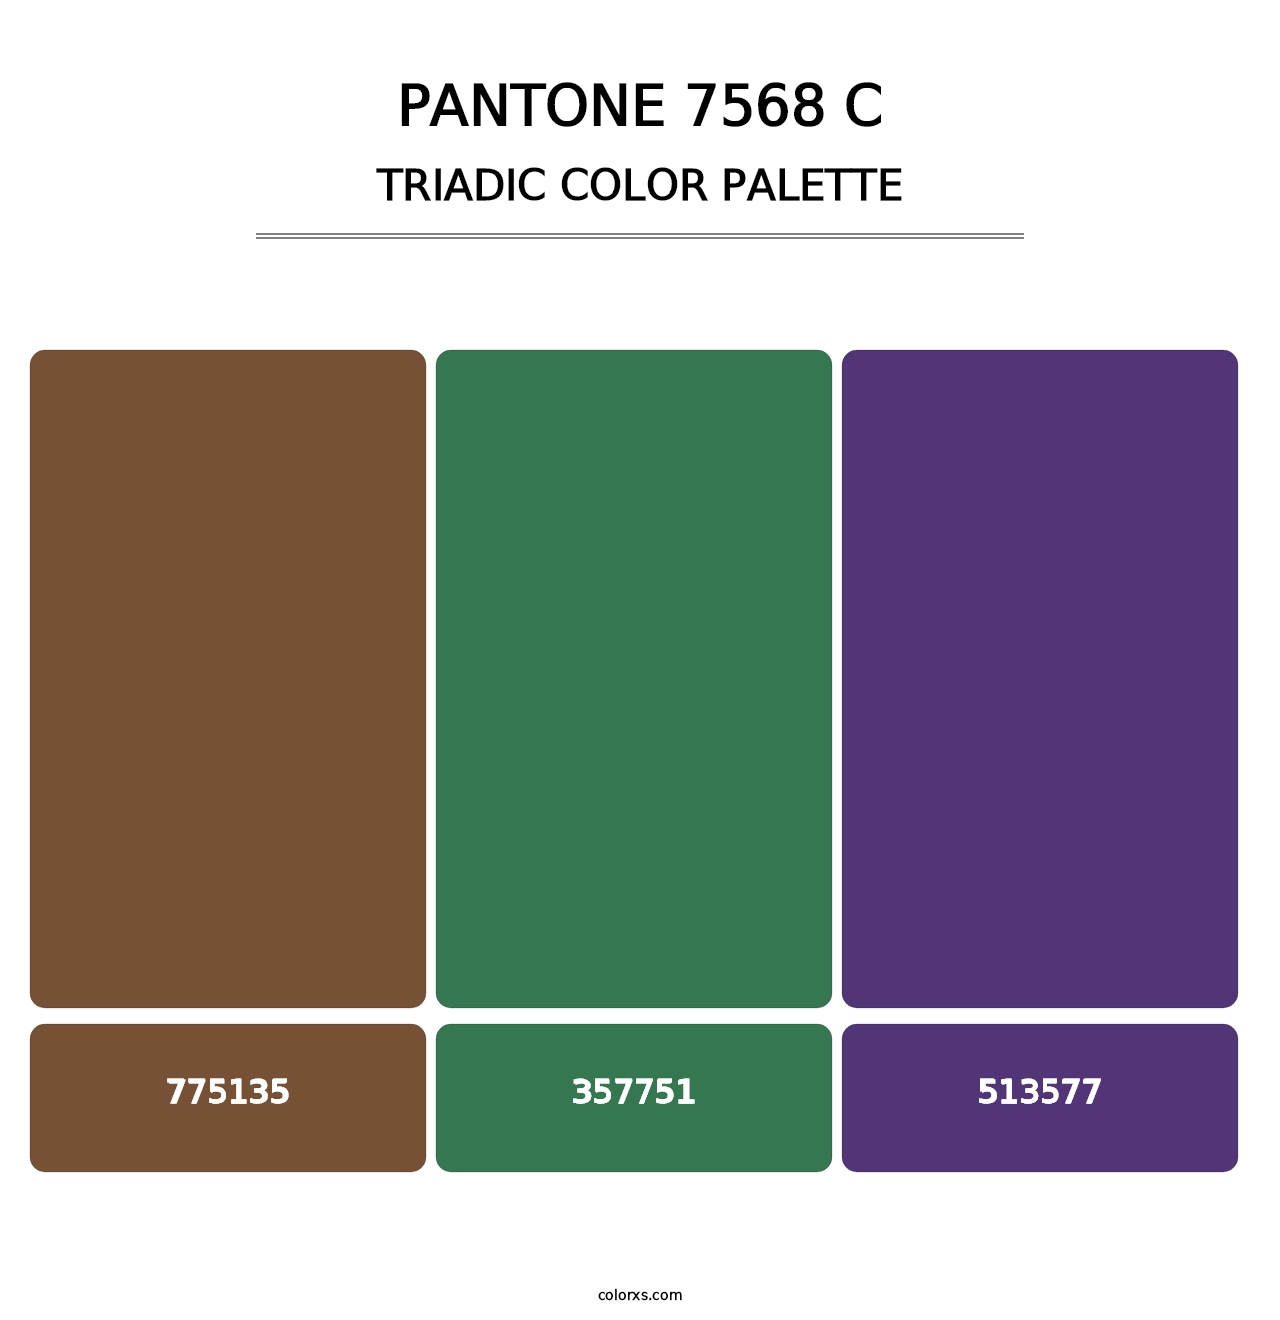 PANTONE 7568 C - Triadic Color Palette